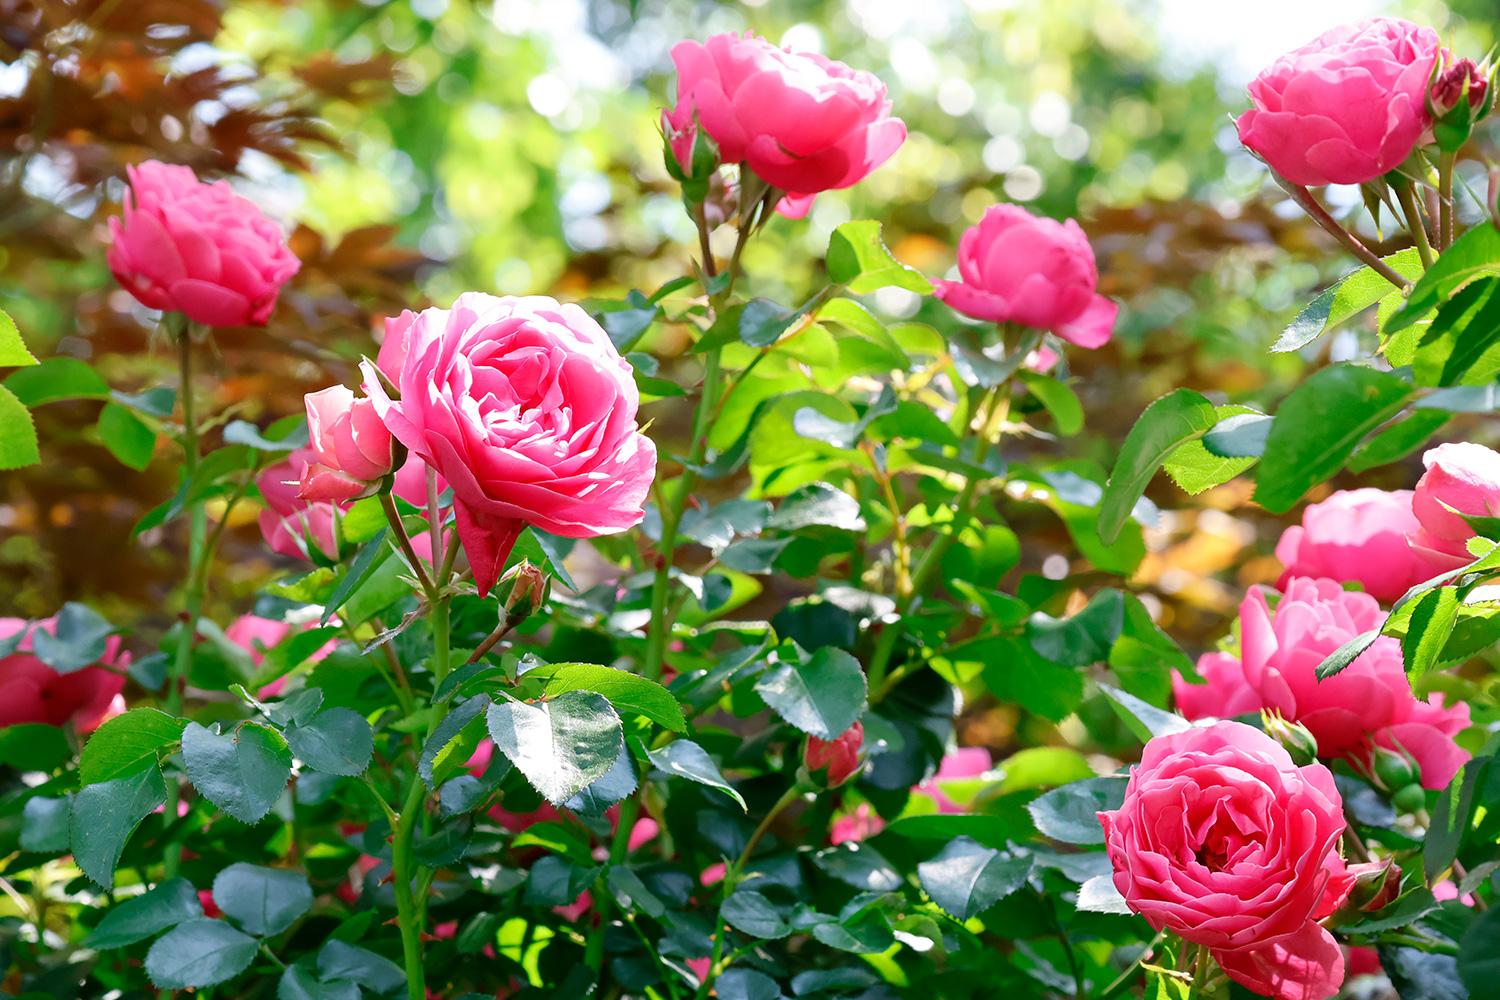 Blushing roses soak up the early summer sun. (Tokyo, May 2023)